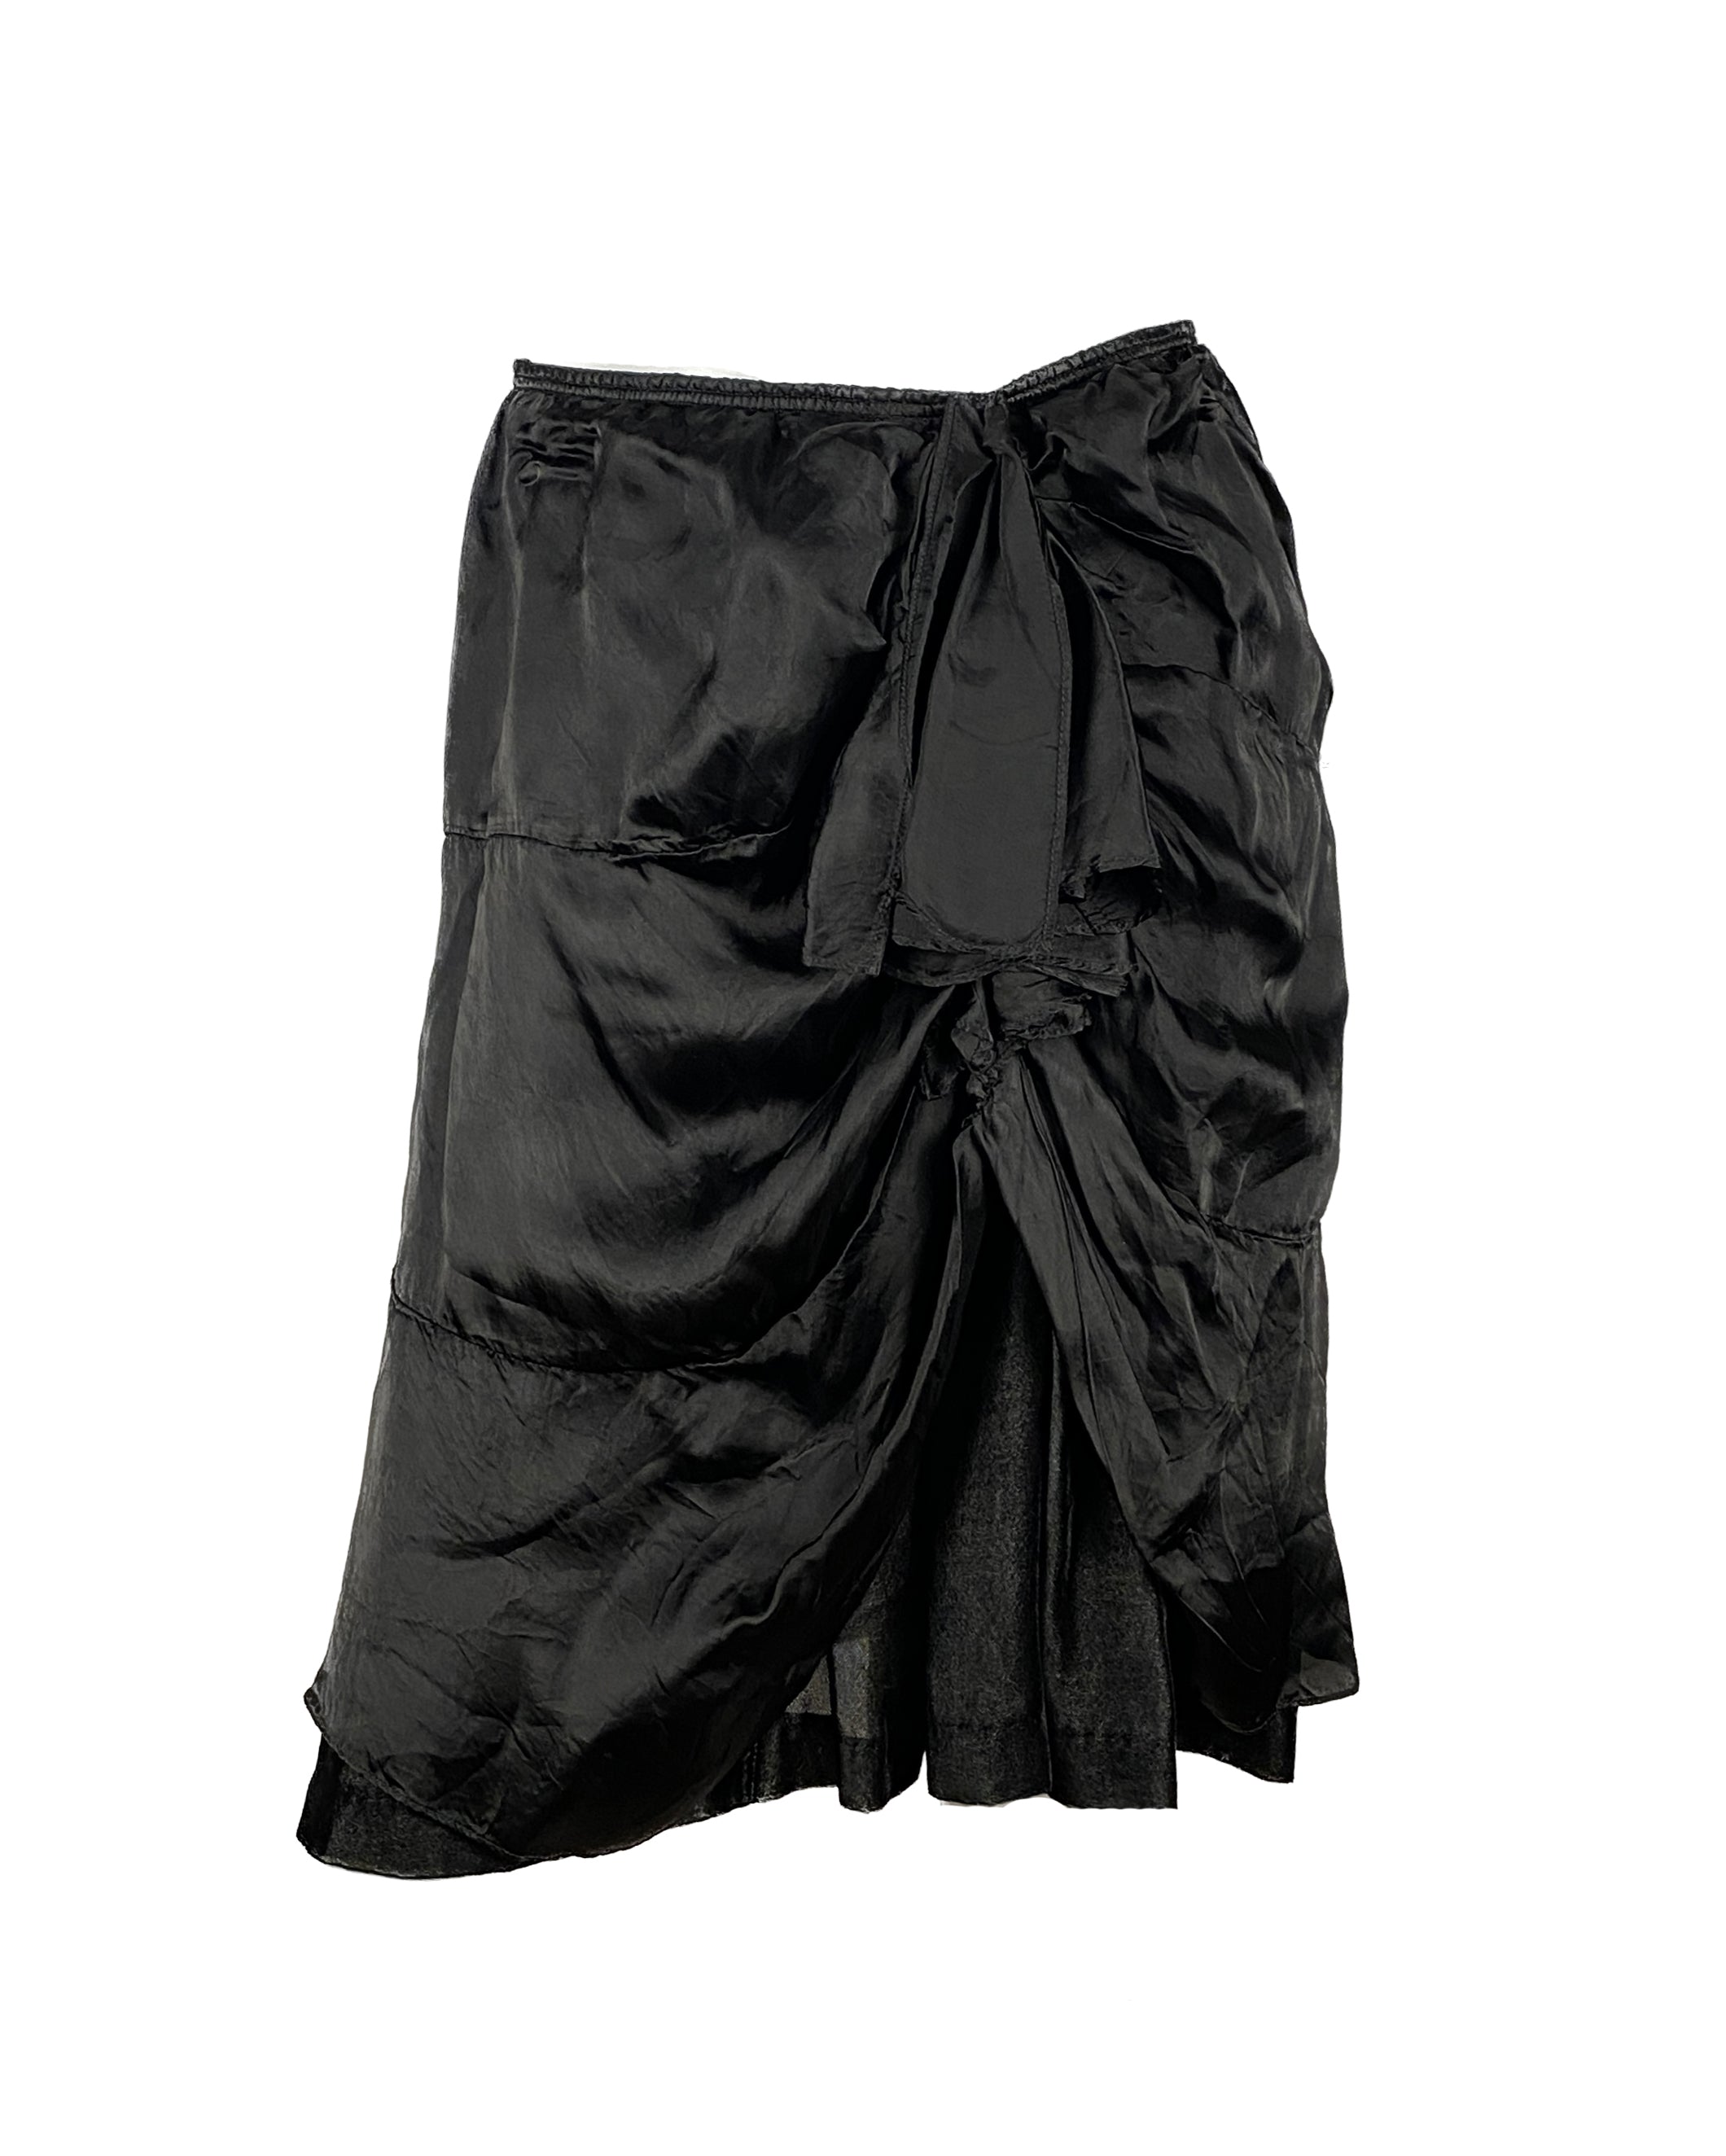 ZUCCA Frill Skirt S/M